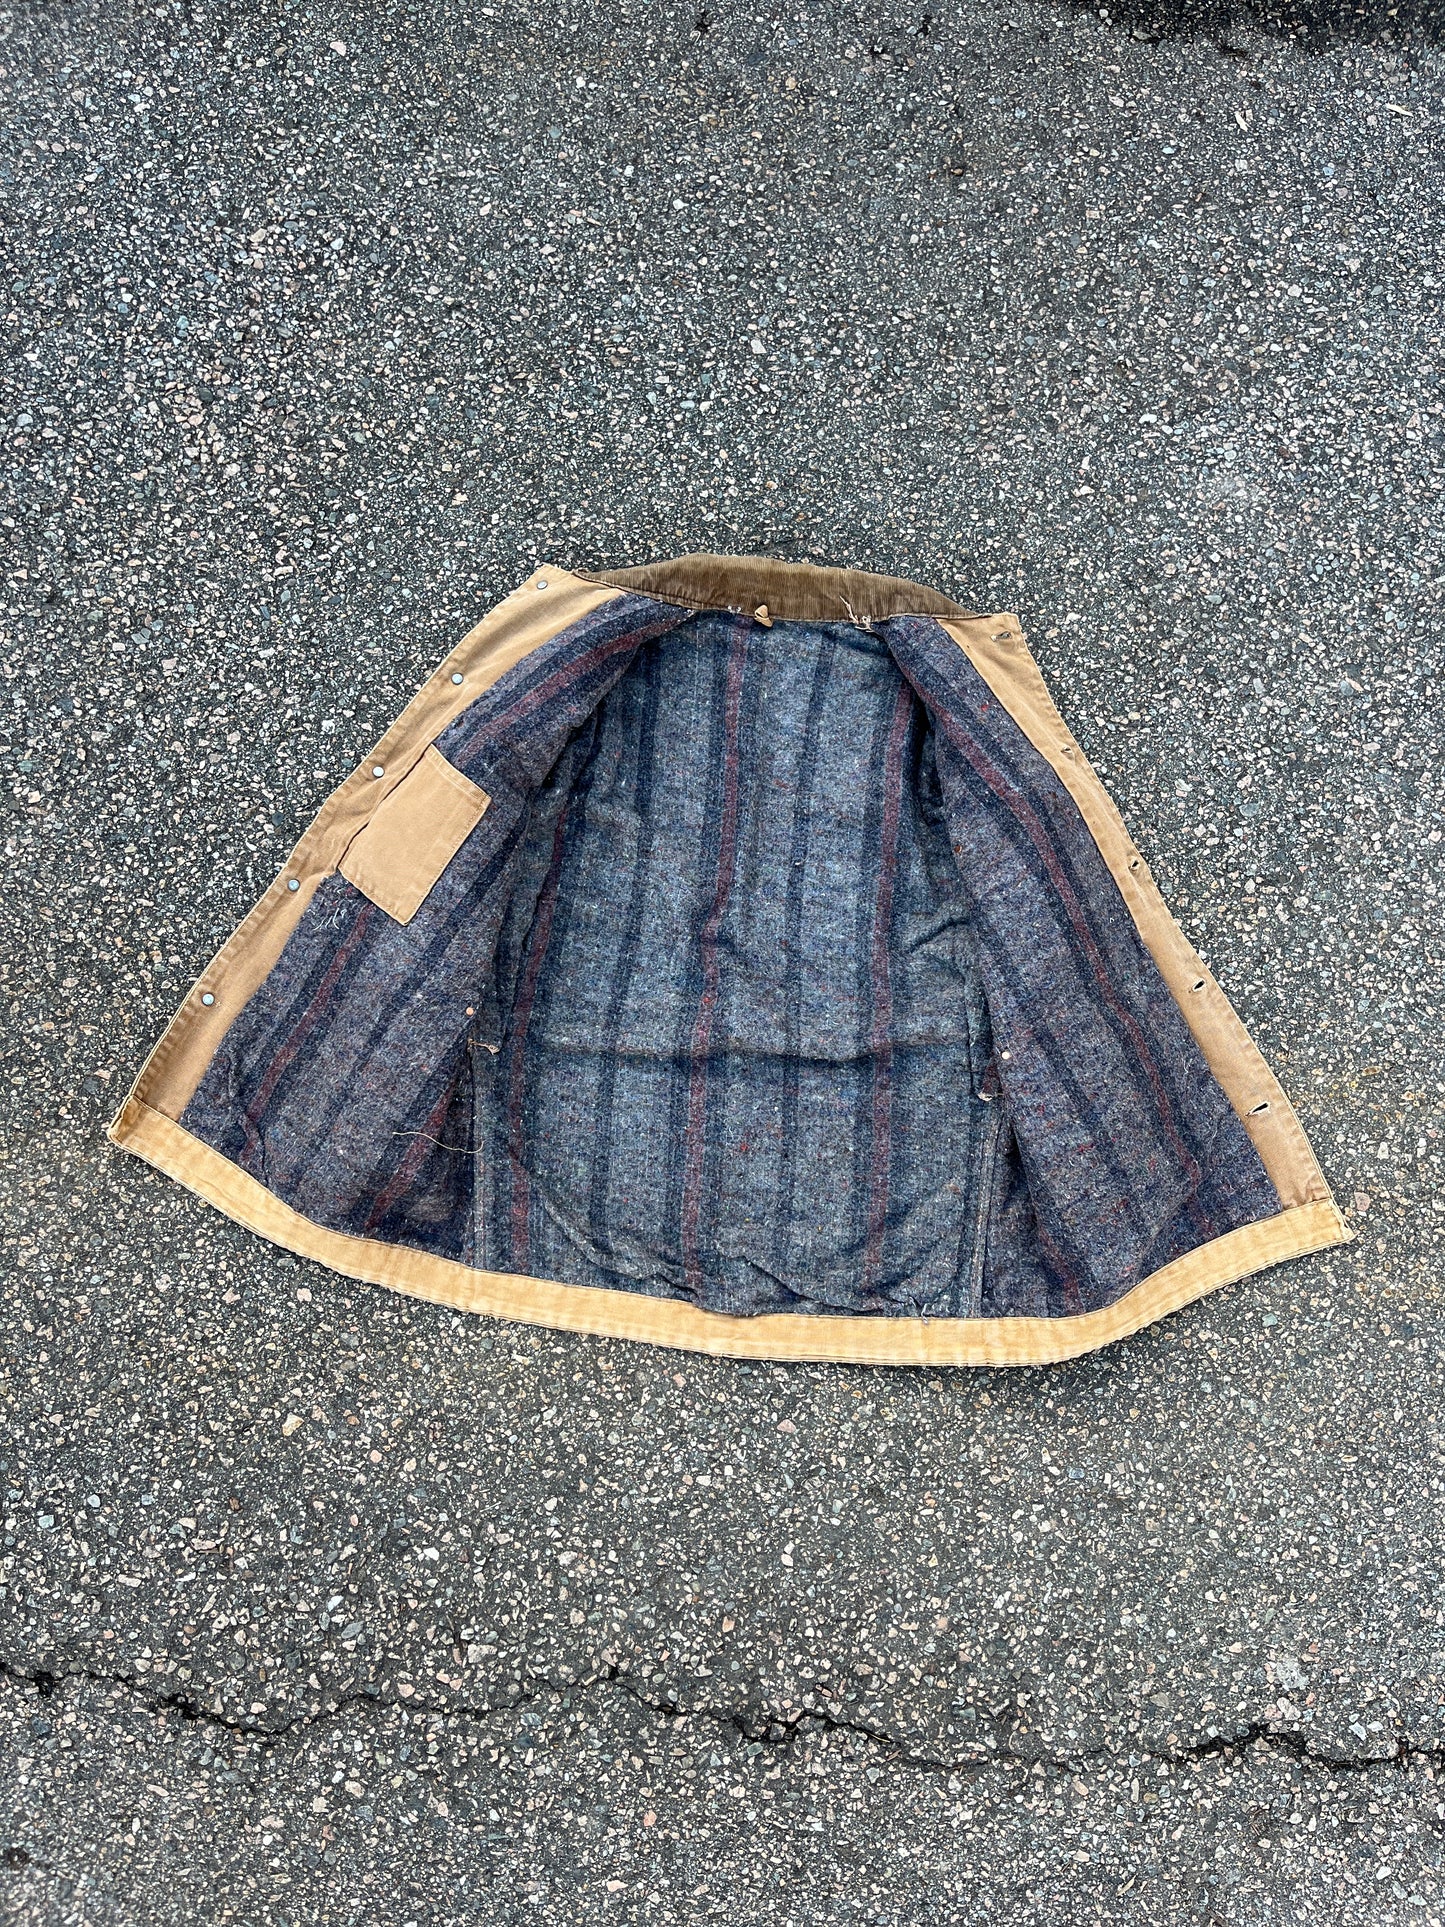 70’s Faded Brown Carhartt Chore Jacket - Medium